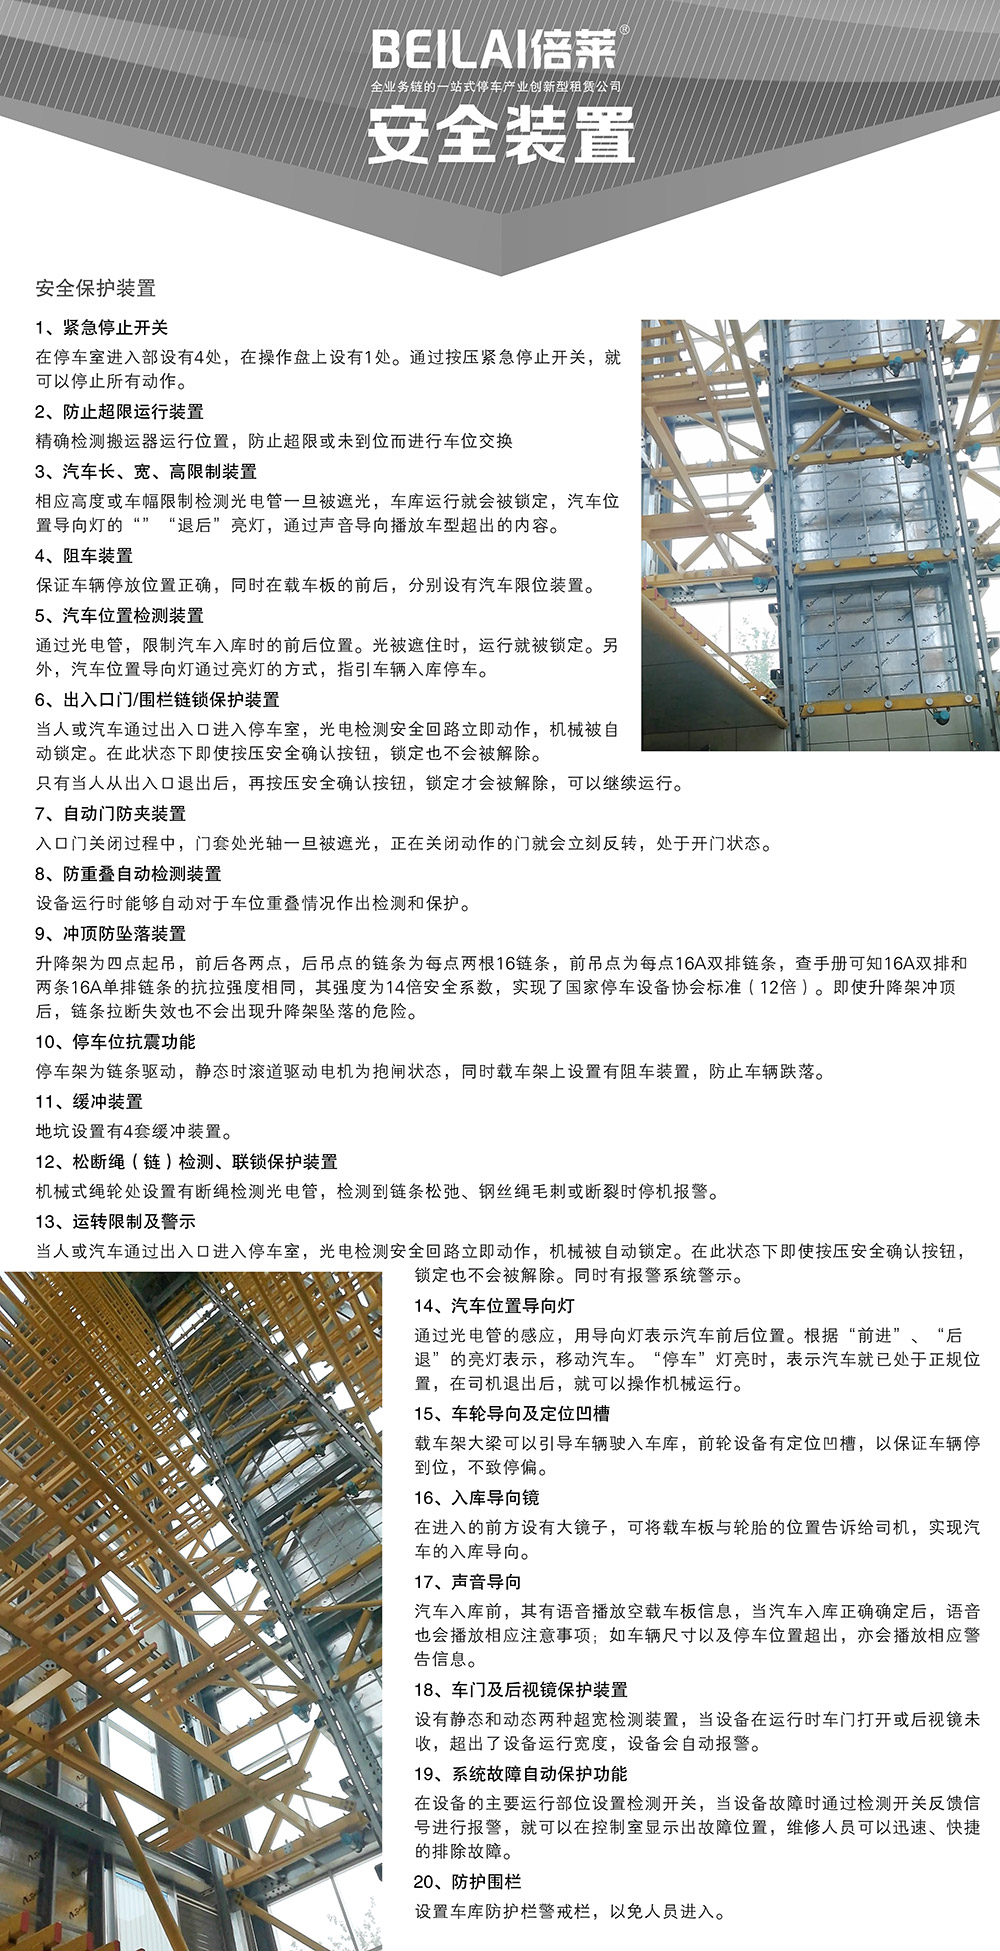 贵阳昆明垂直升降立体车库设备安全装置.jpg